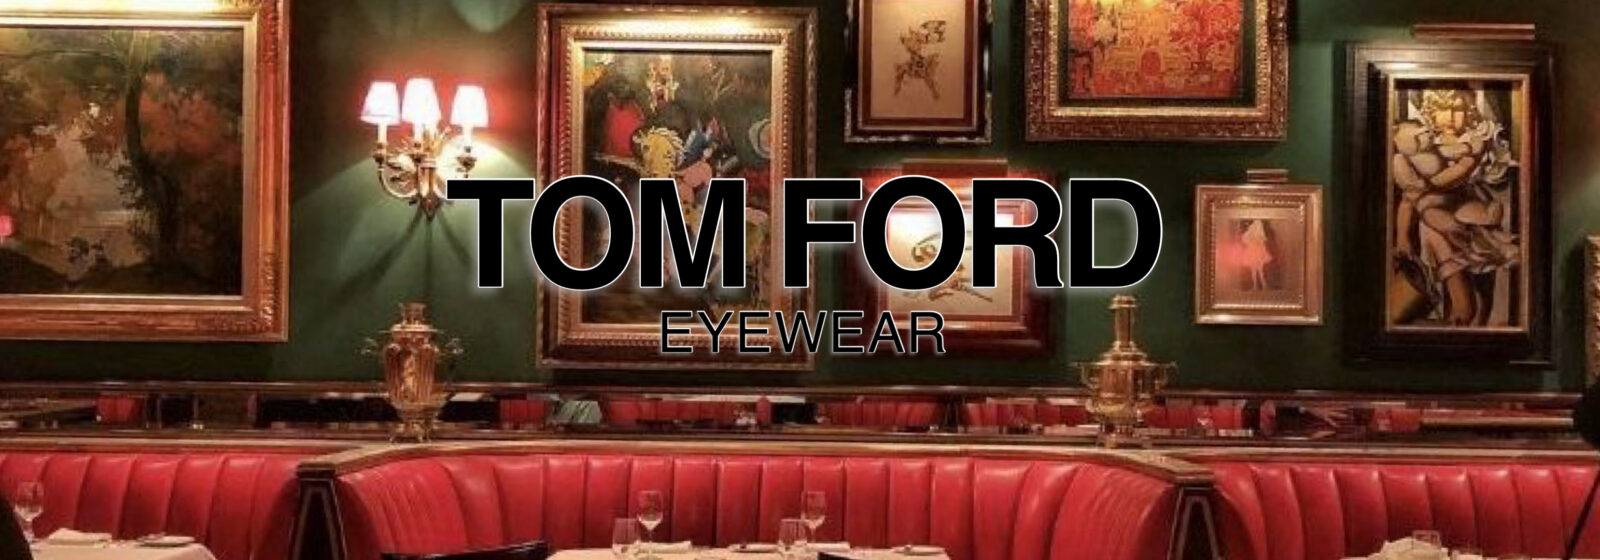 VOIR,deuxiemeVOIR,TOM FORD eyewear,画像,バナー